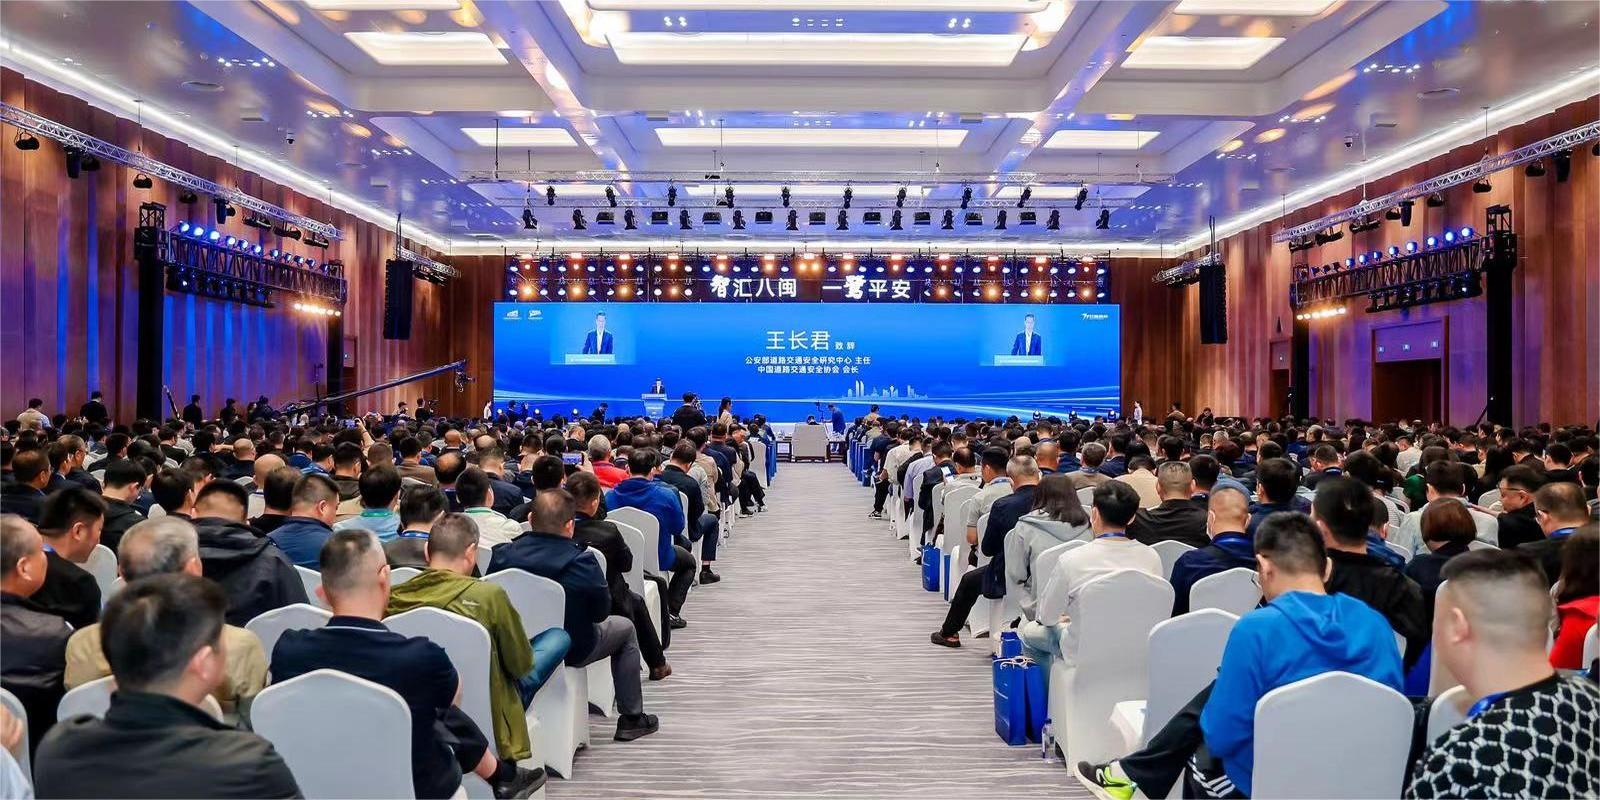 2024年中国道路交通安全创新与合作大会在厦门举办